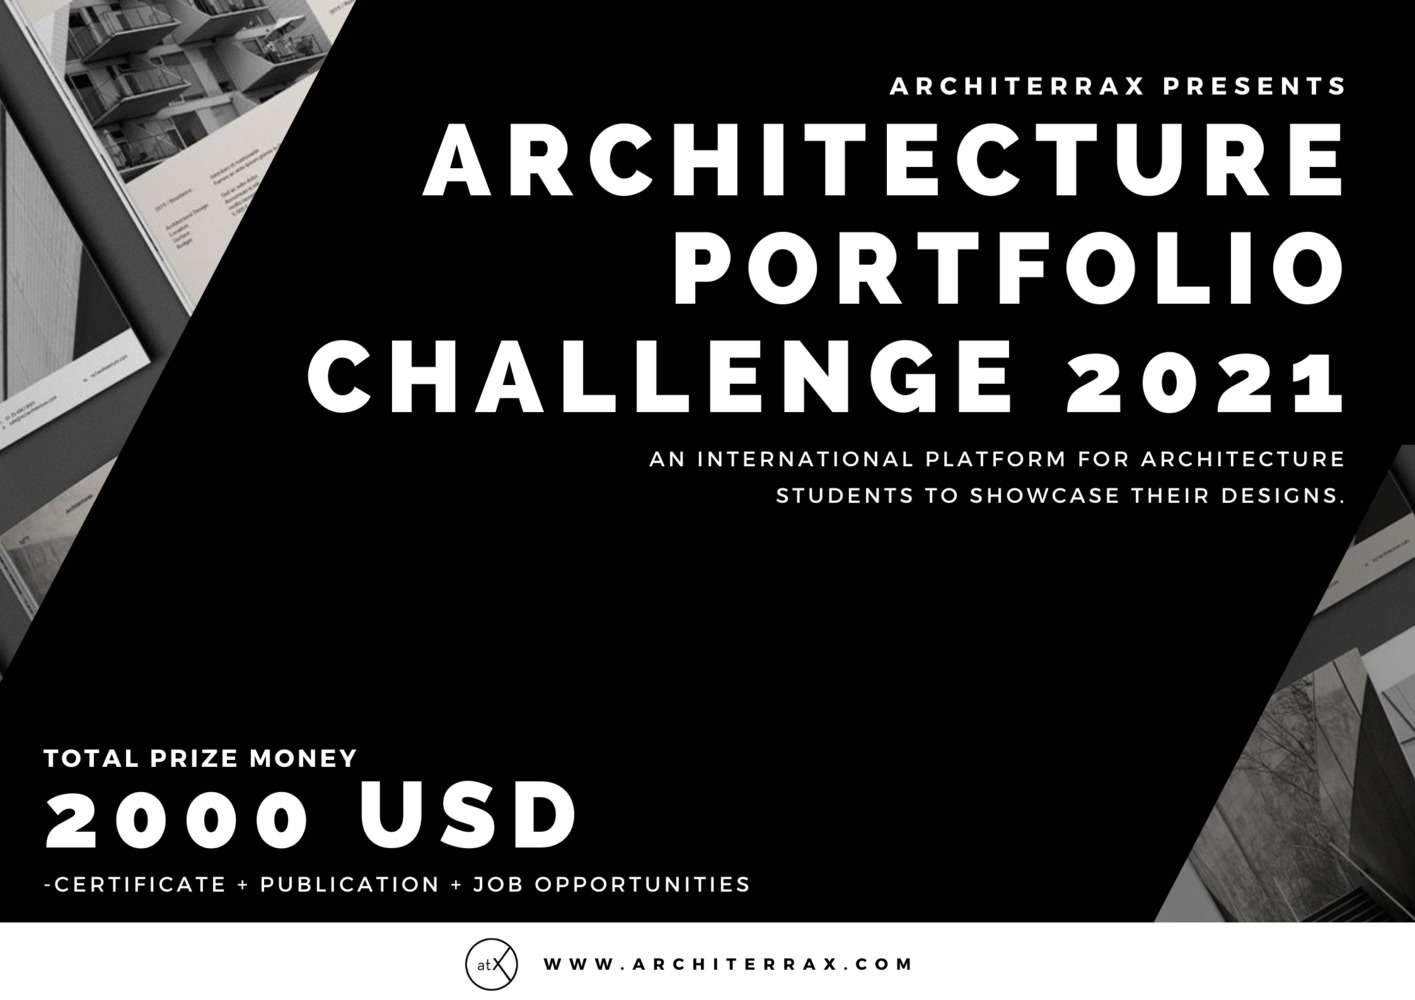 Architecture Portfolio Challenge 2021- Architerrax